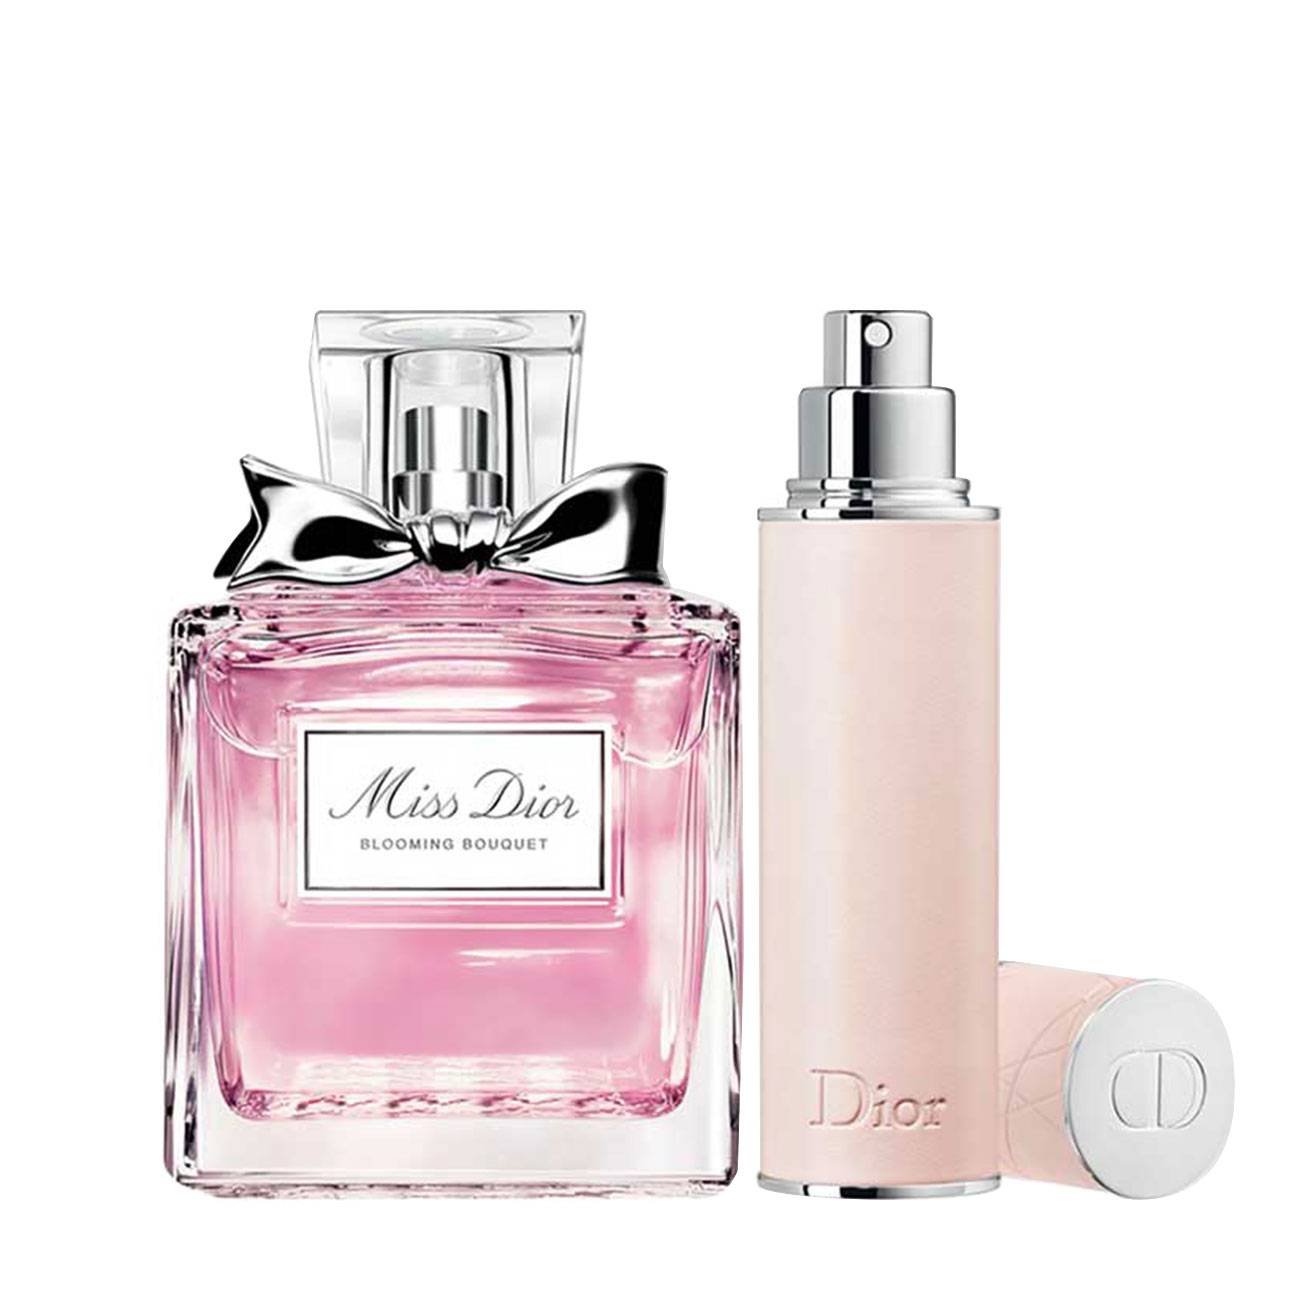 Set parfumuri Dior MISS DIOR BLOOMING BOUQUET TRAVAL SPRAY SET 110ml cu comanda online